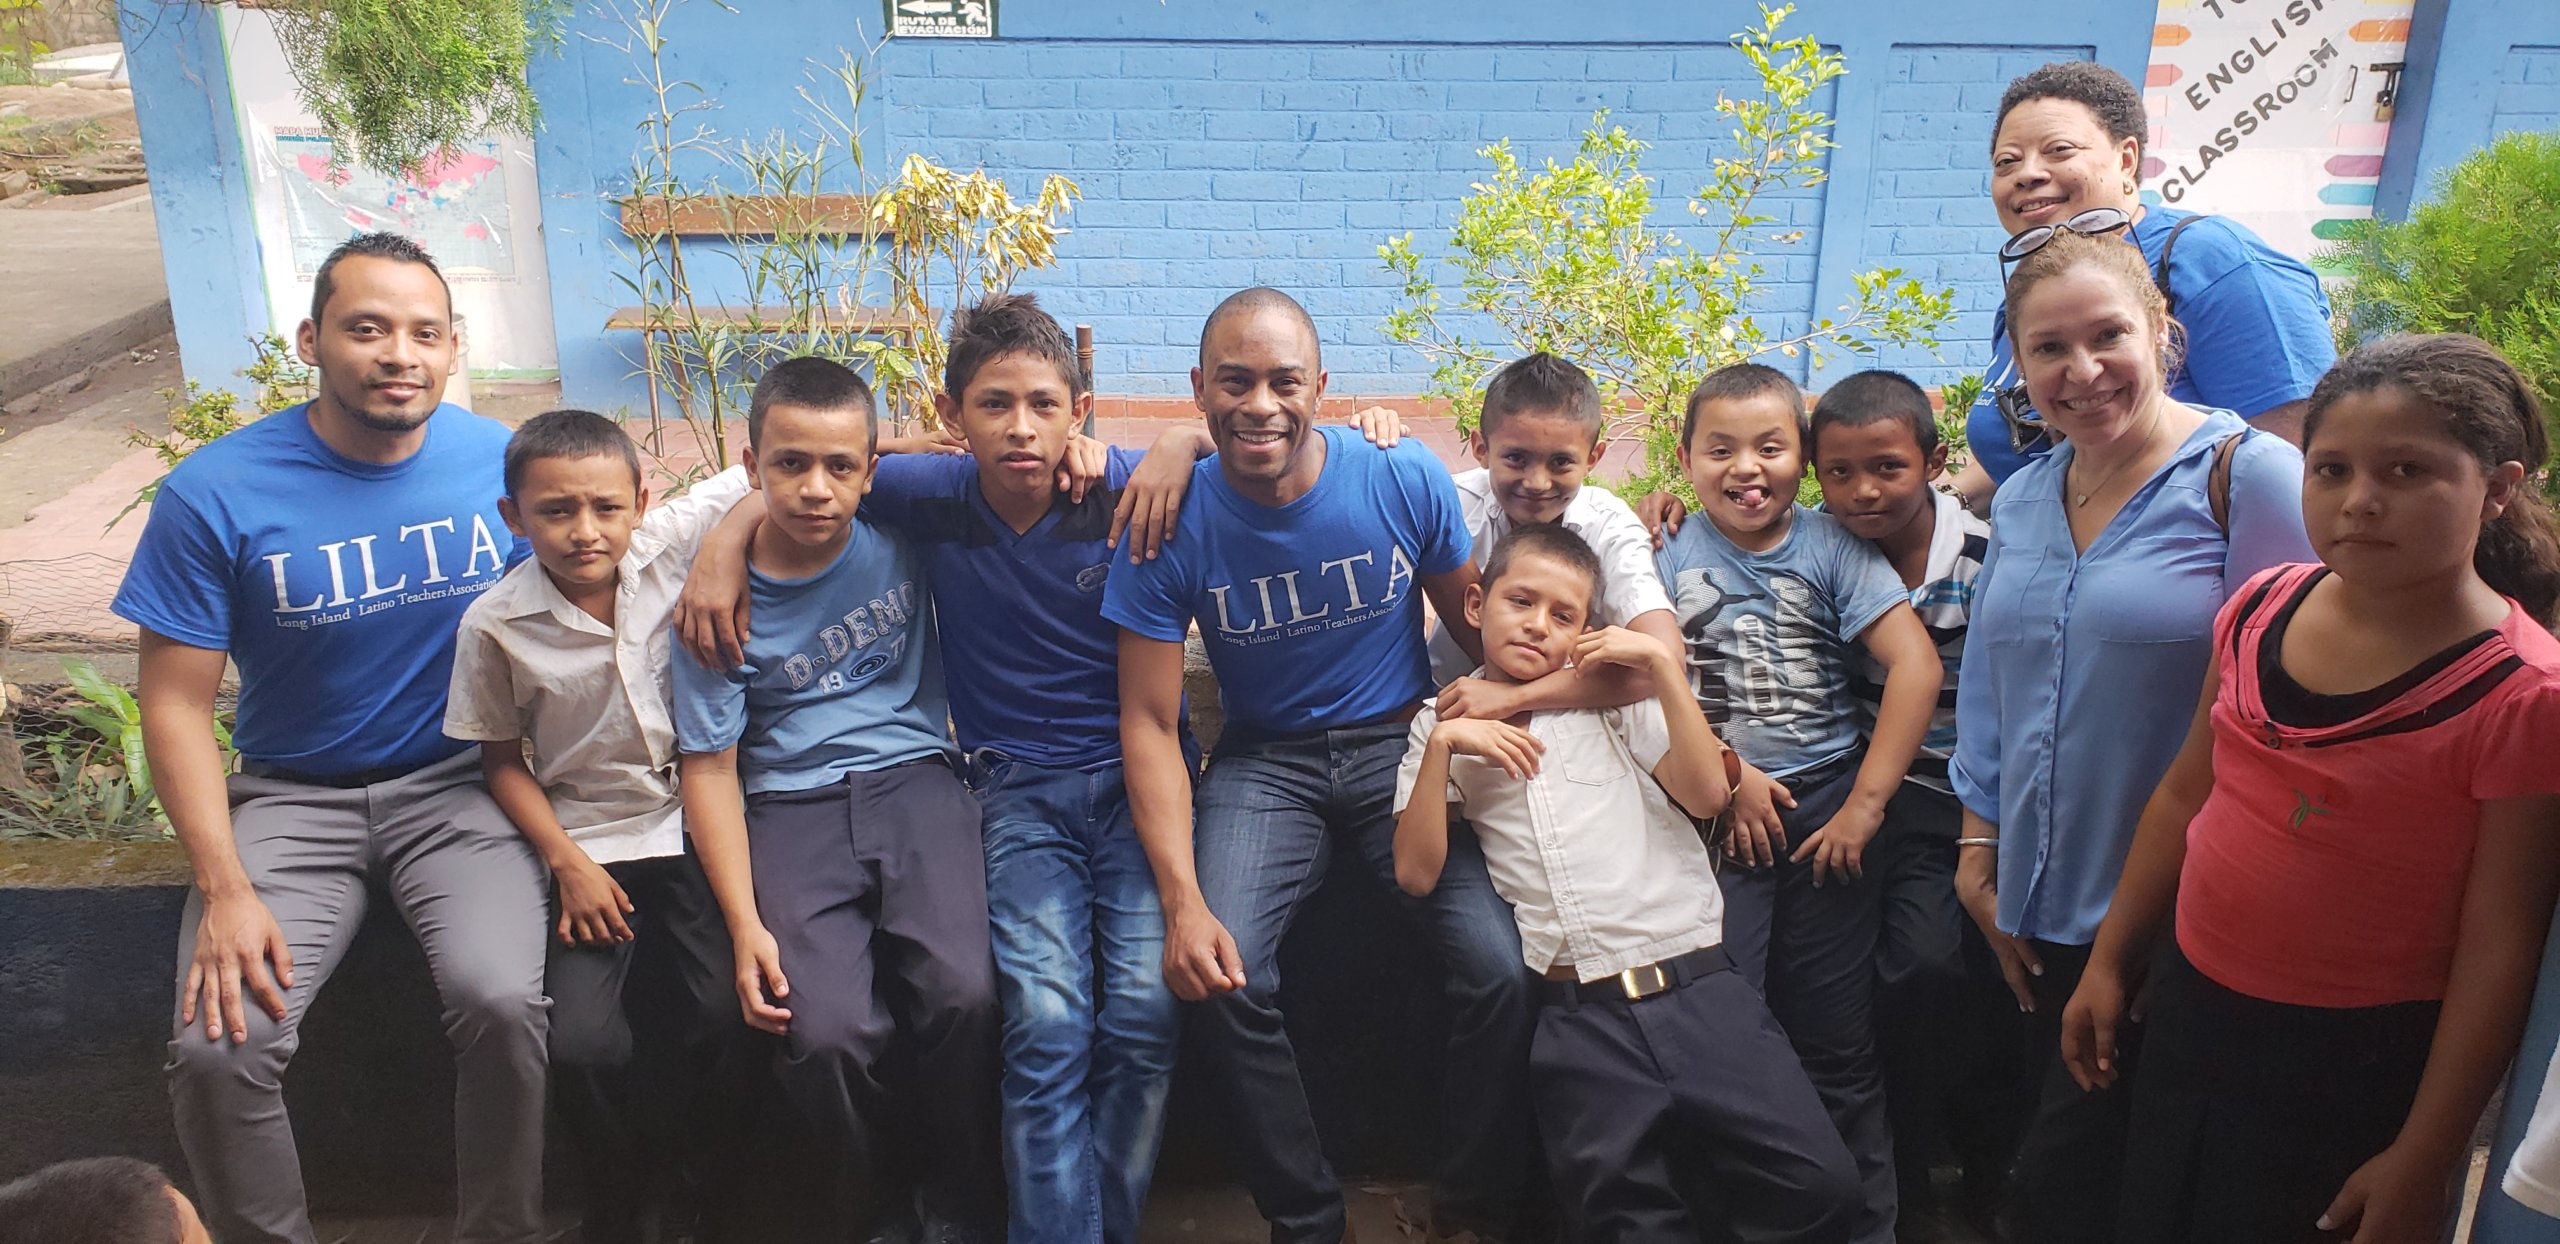 Maestros hispanos fomentan la integración de estudiantes salvadoreños que llegan a Long Island